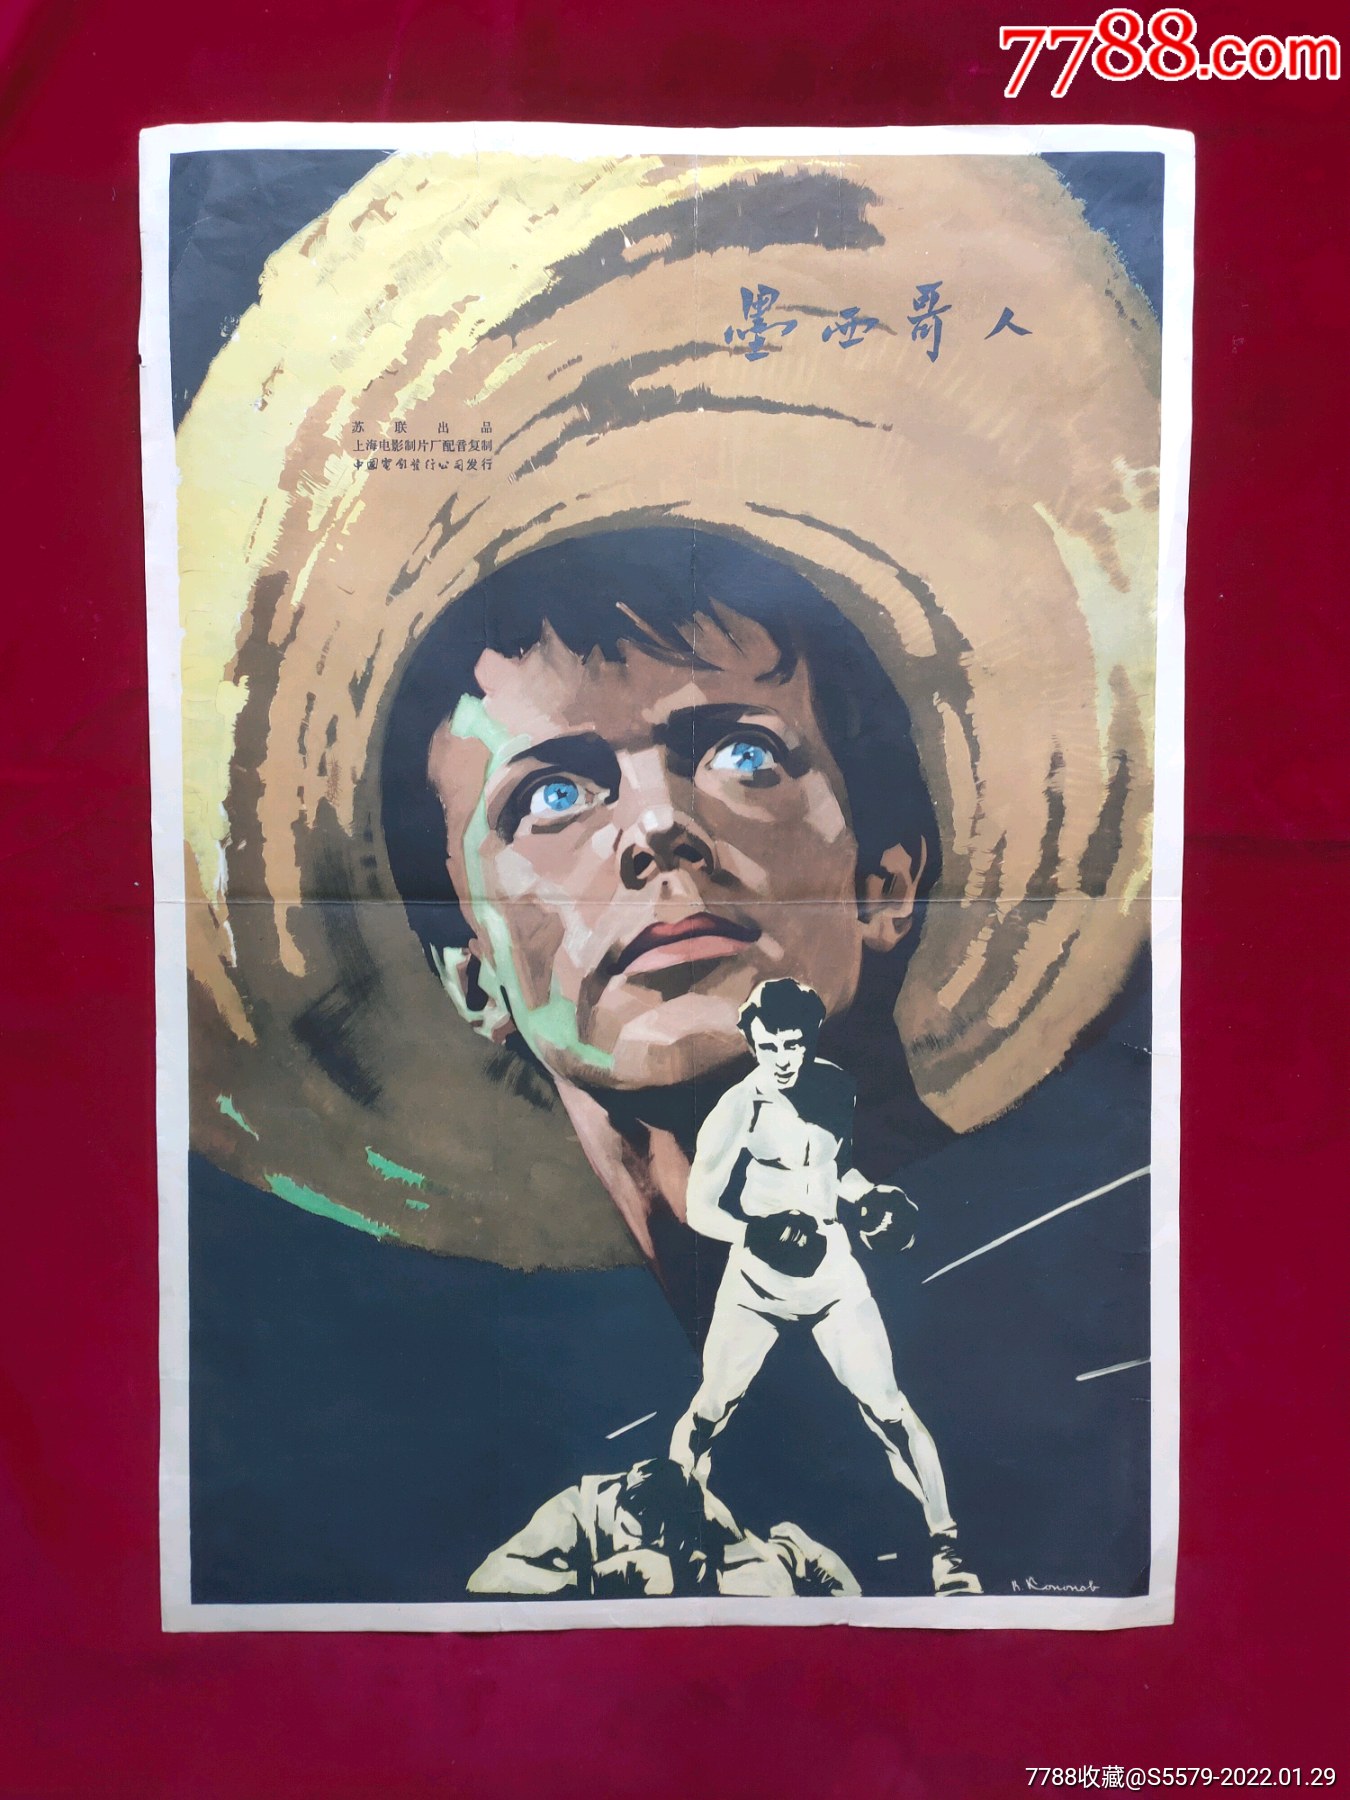 4开电影海报:墨西哥人(1957年上映)